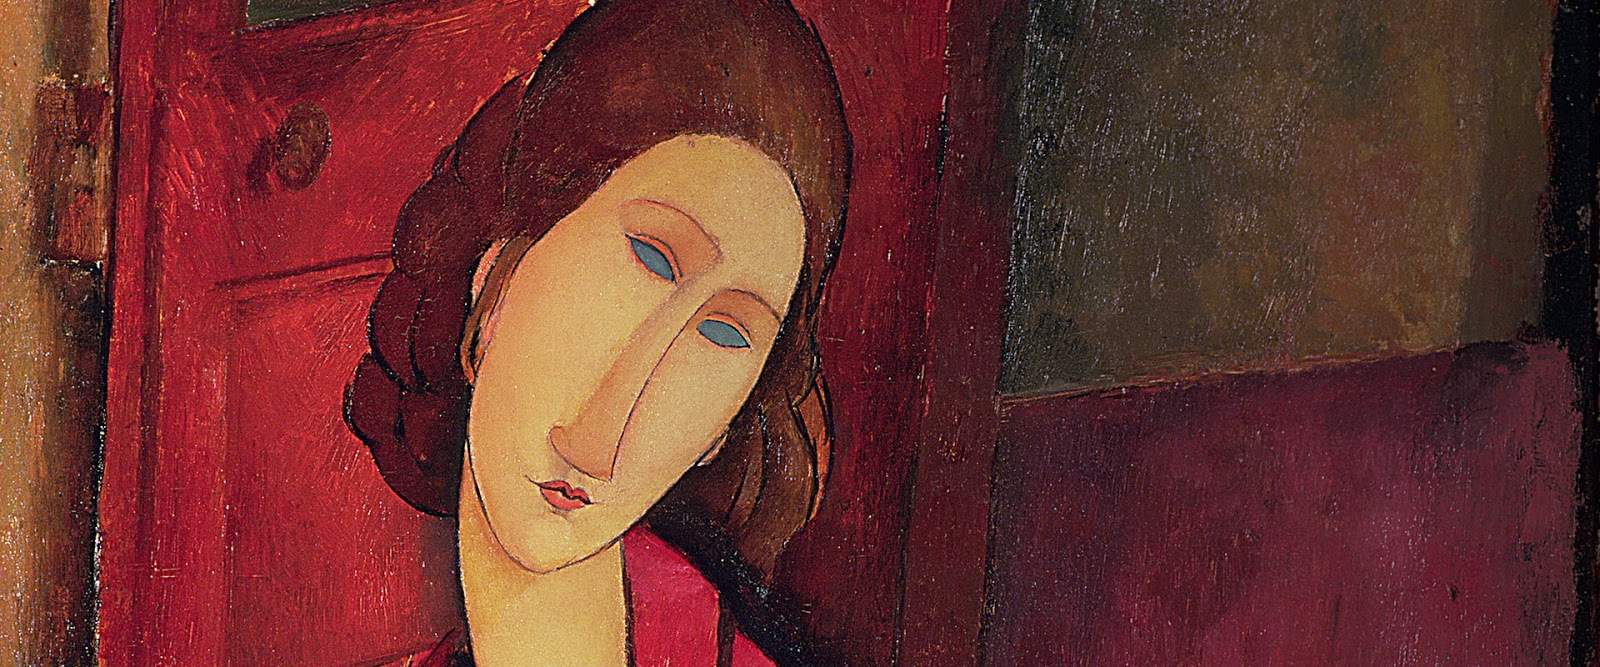 Amedeo+Modigliani-1884-1920 (128).jpg